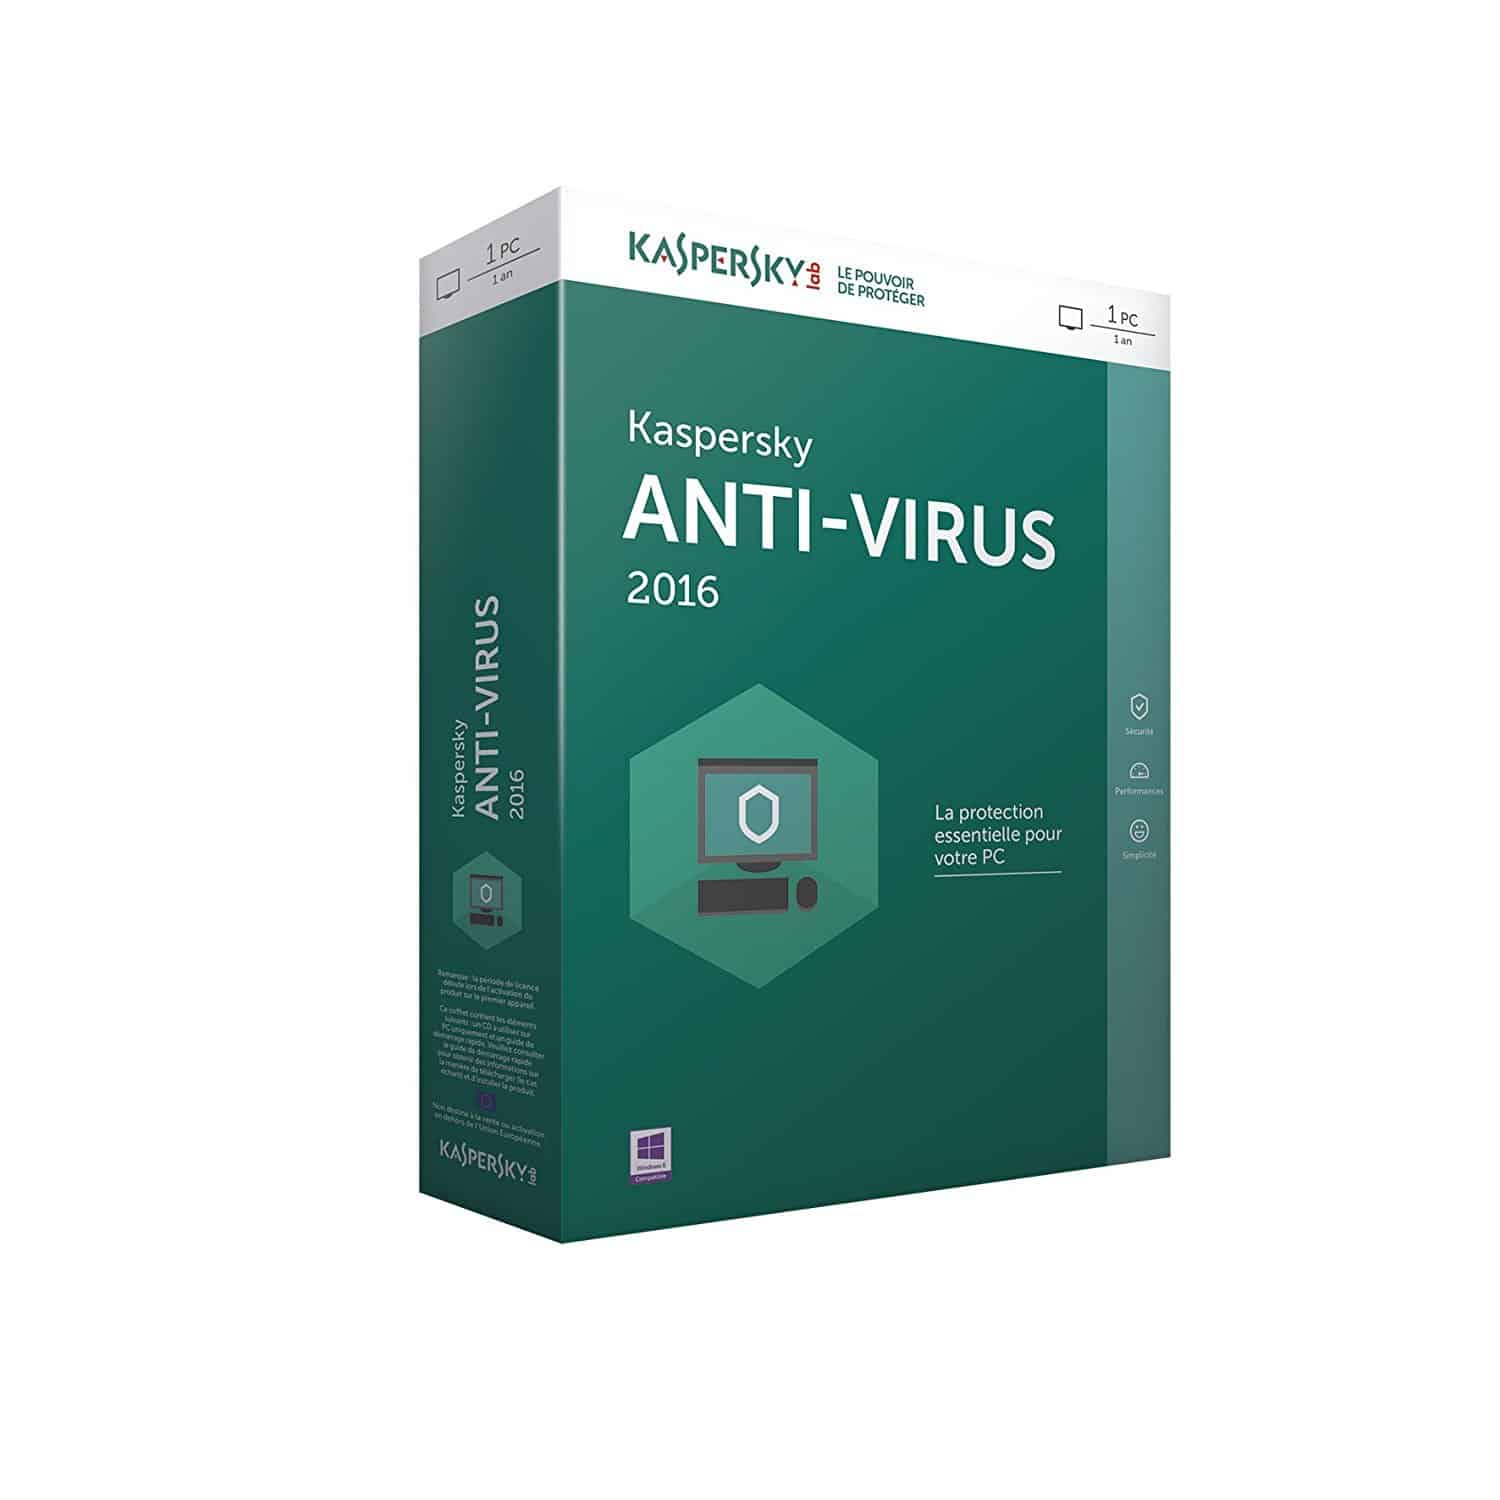 Antivirus : Savez-vous comment faire pour bien choisir le logiciel antivirus de votre ordinateur personnel